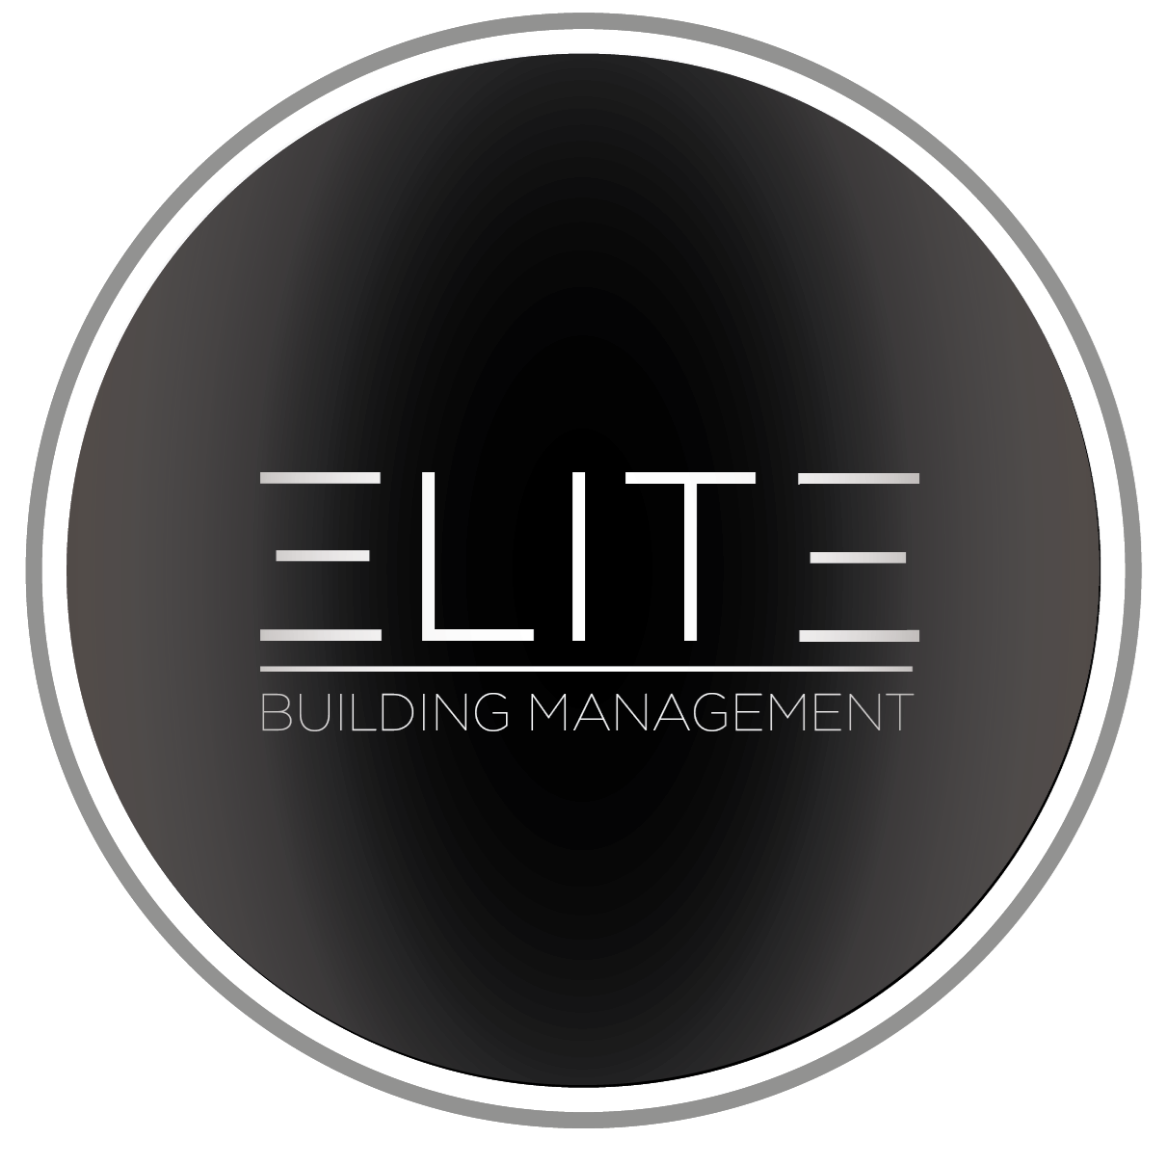 Elite Building and Construction Management Reviews